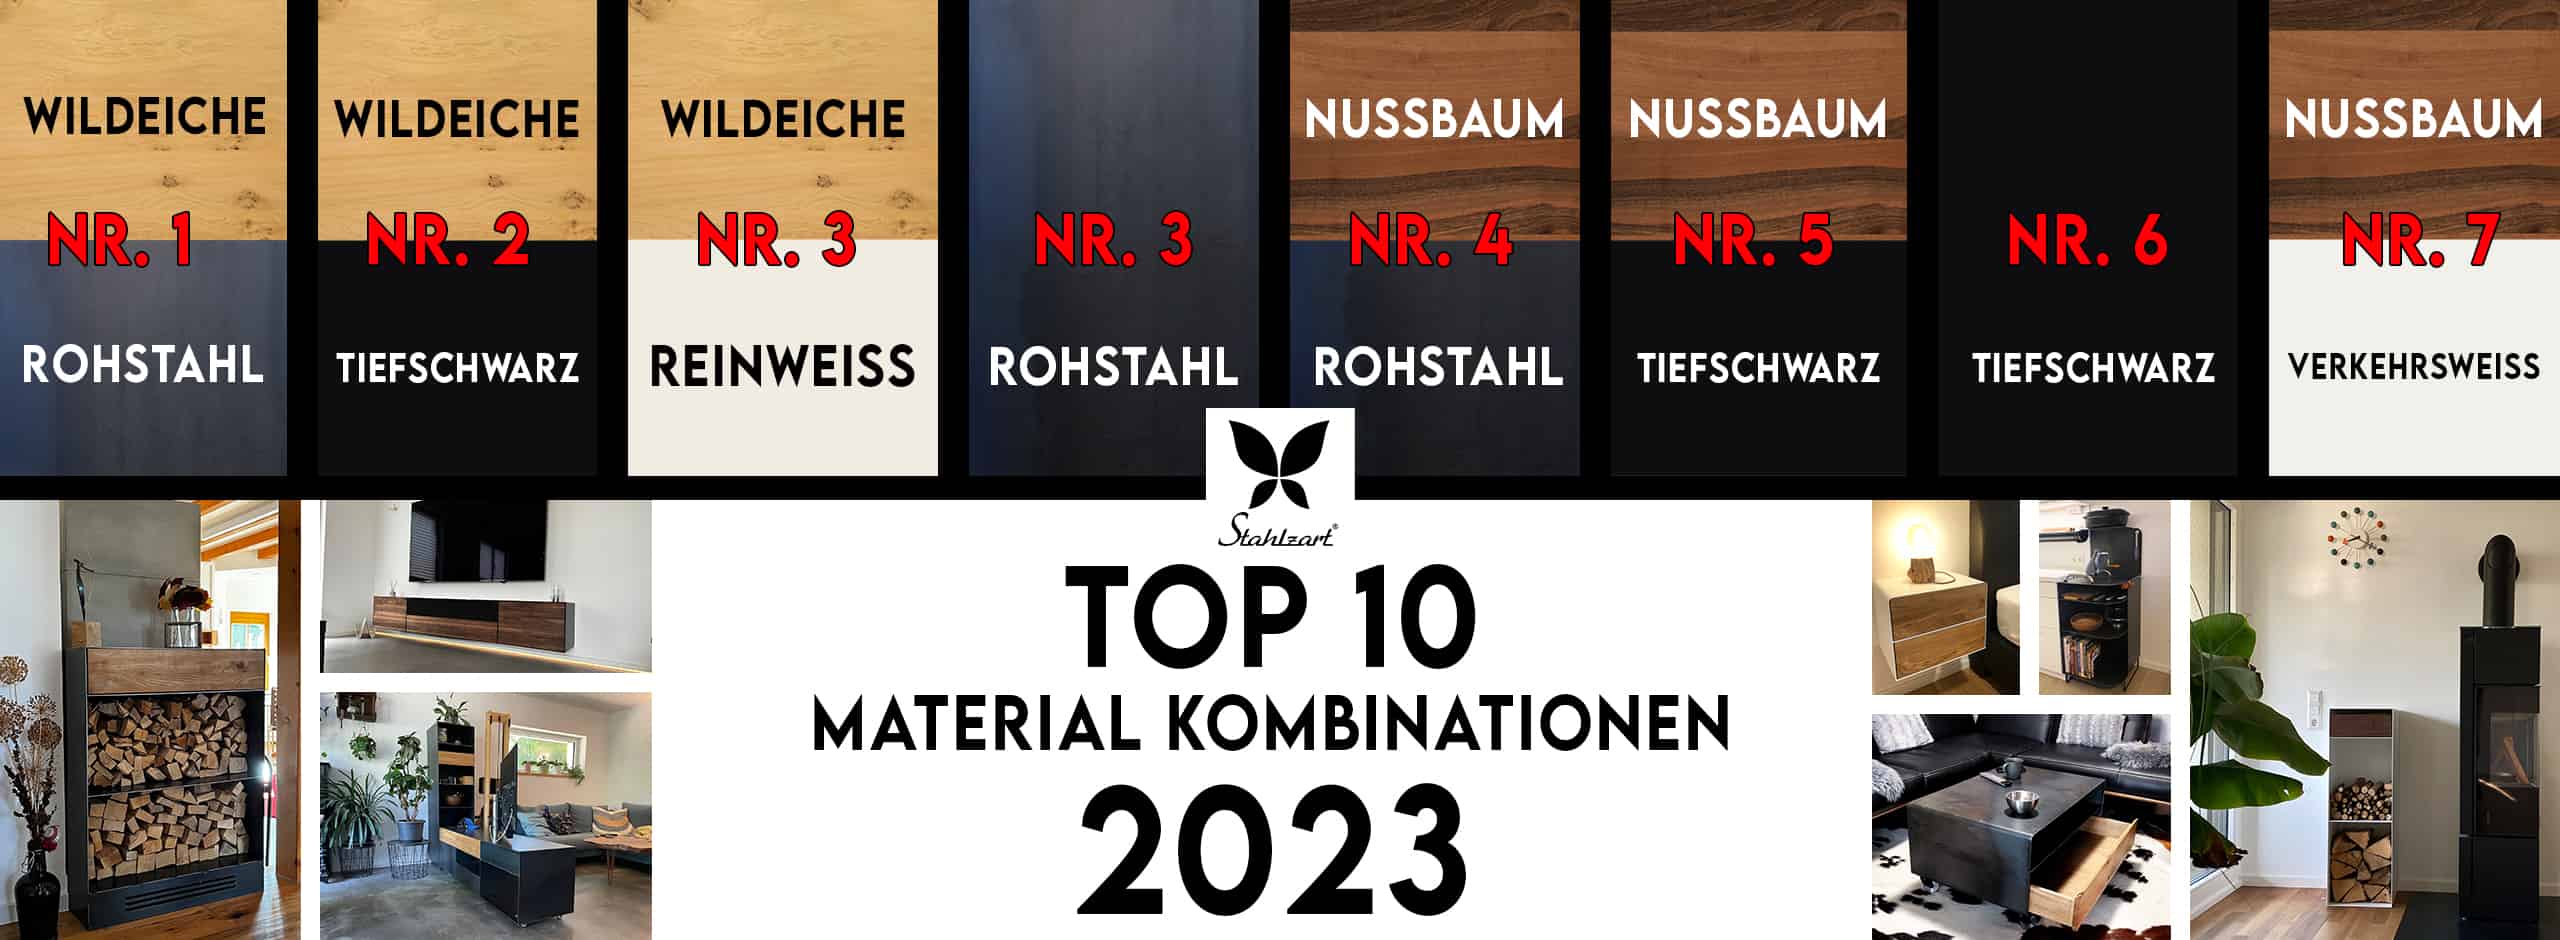 stahlzart-moebel-top-10-material-kombinationen-2023-nr-1-rohstahl-wildeiche-nr-2-tiefschwarz-wildeiche-nr-3-reinweiss-wildeiche-nr-3-rohstahl-nr-4-nussbaum-rohstahl-nr-5-nussbaum-tiefschwarz-neu